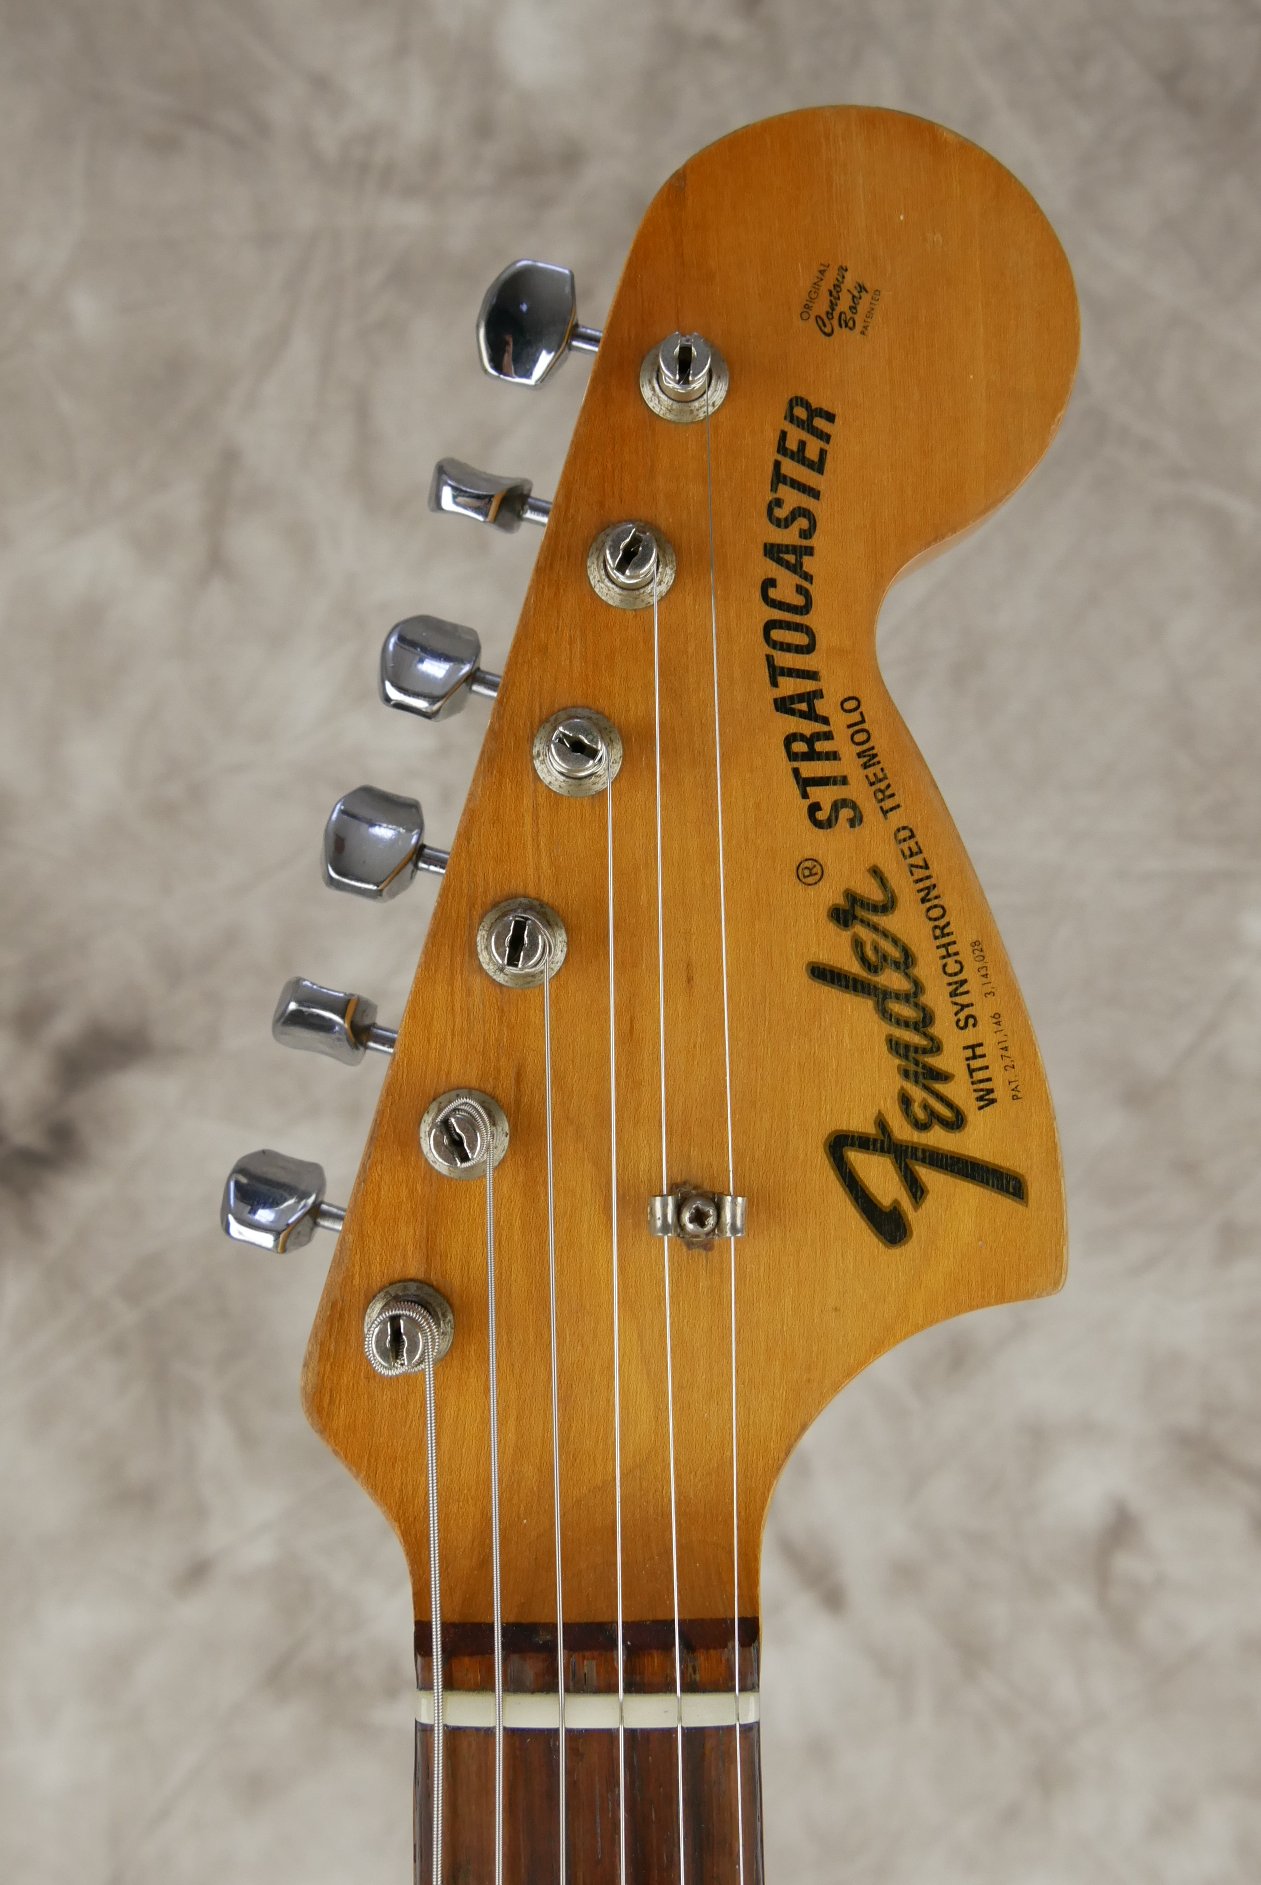 Fender_Stratocaster-1970_sunburst-tremolo-009.JPG